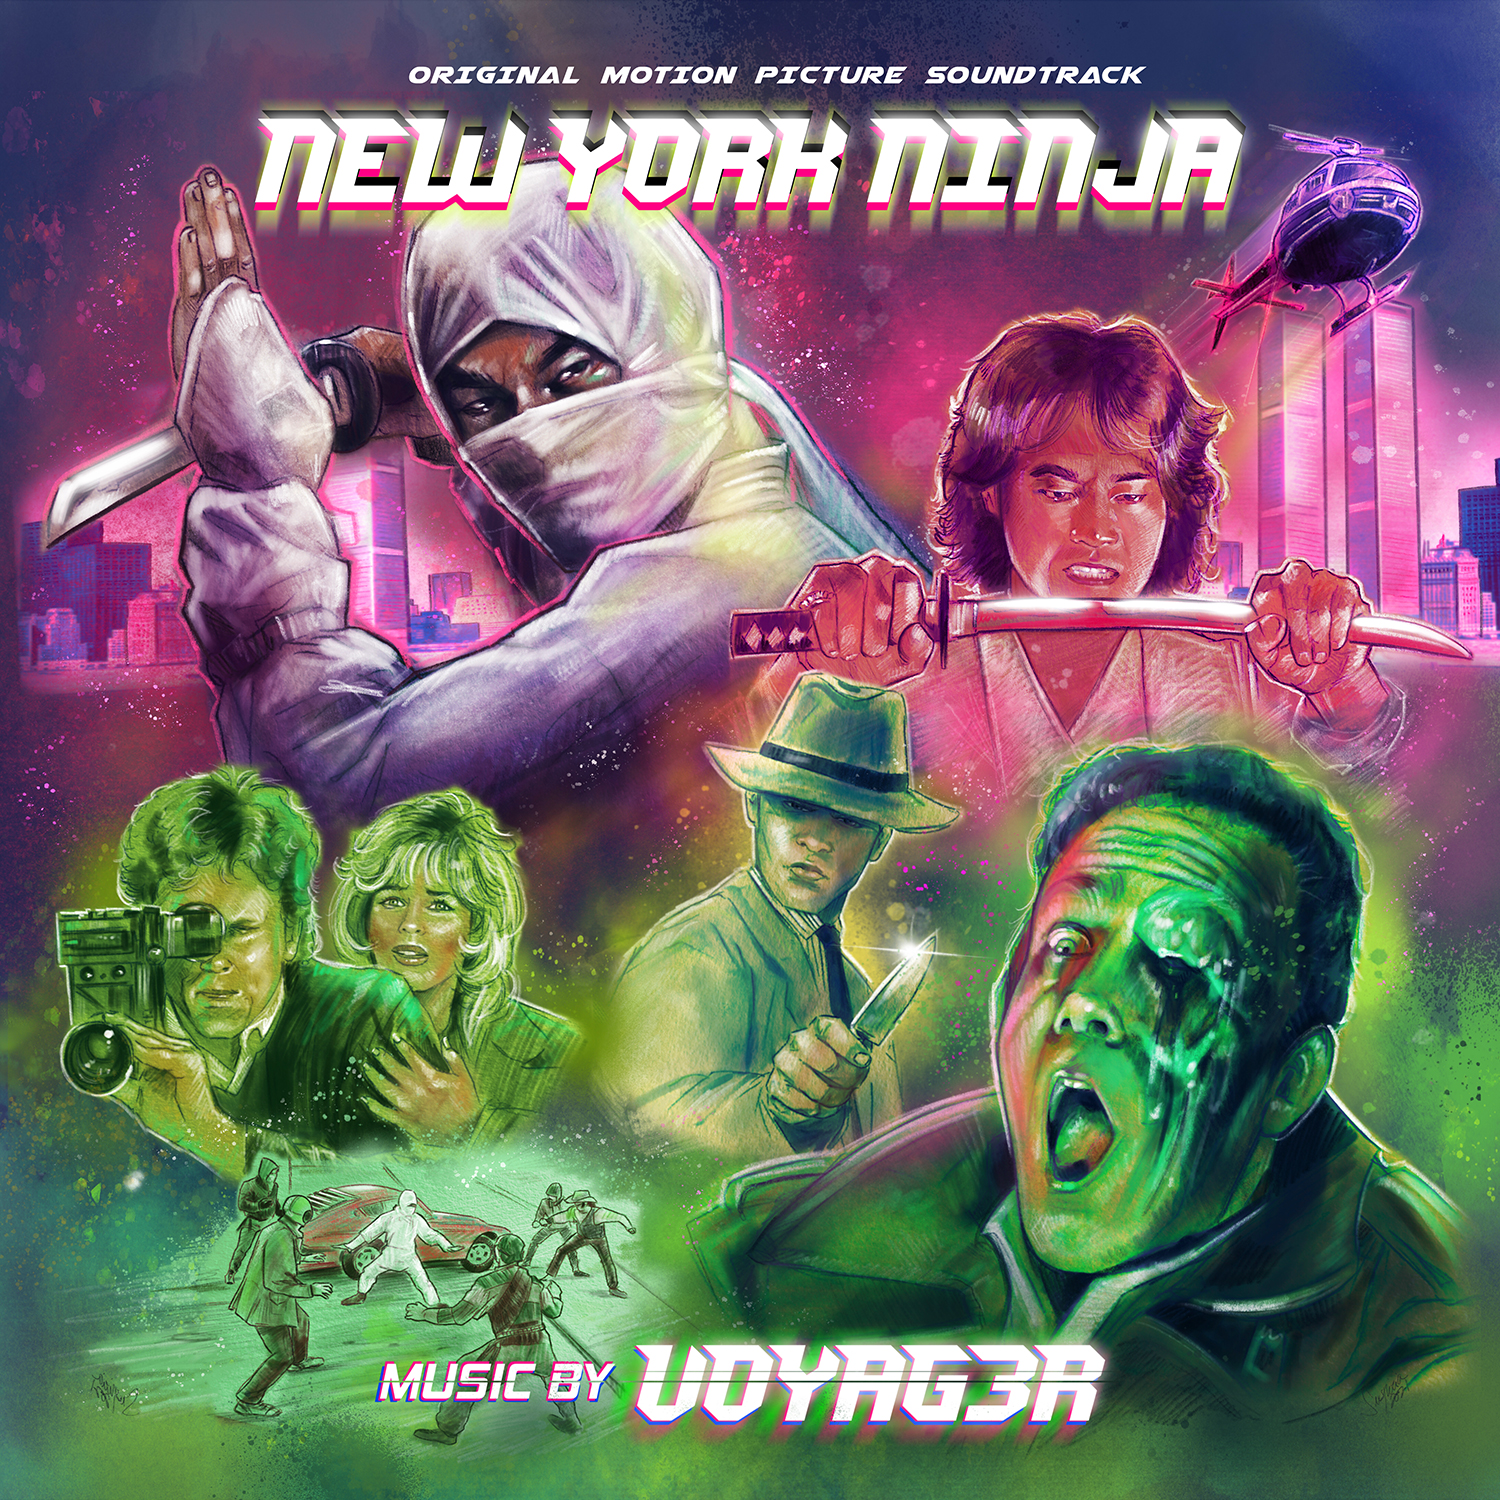 voyag3r-new-york-ninja